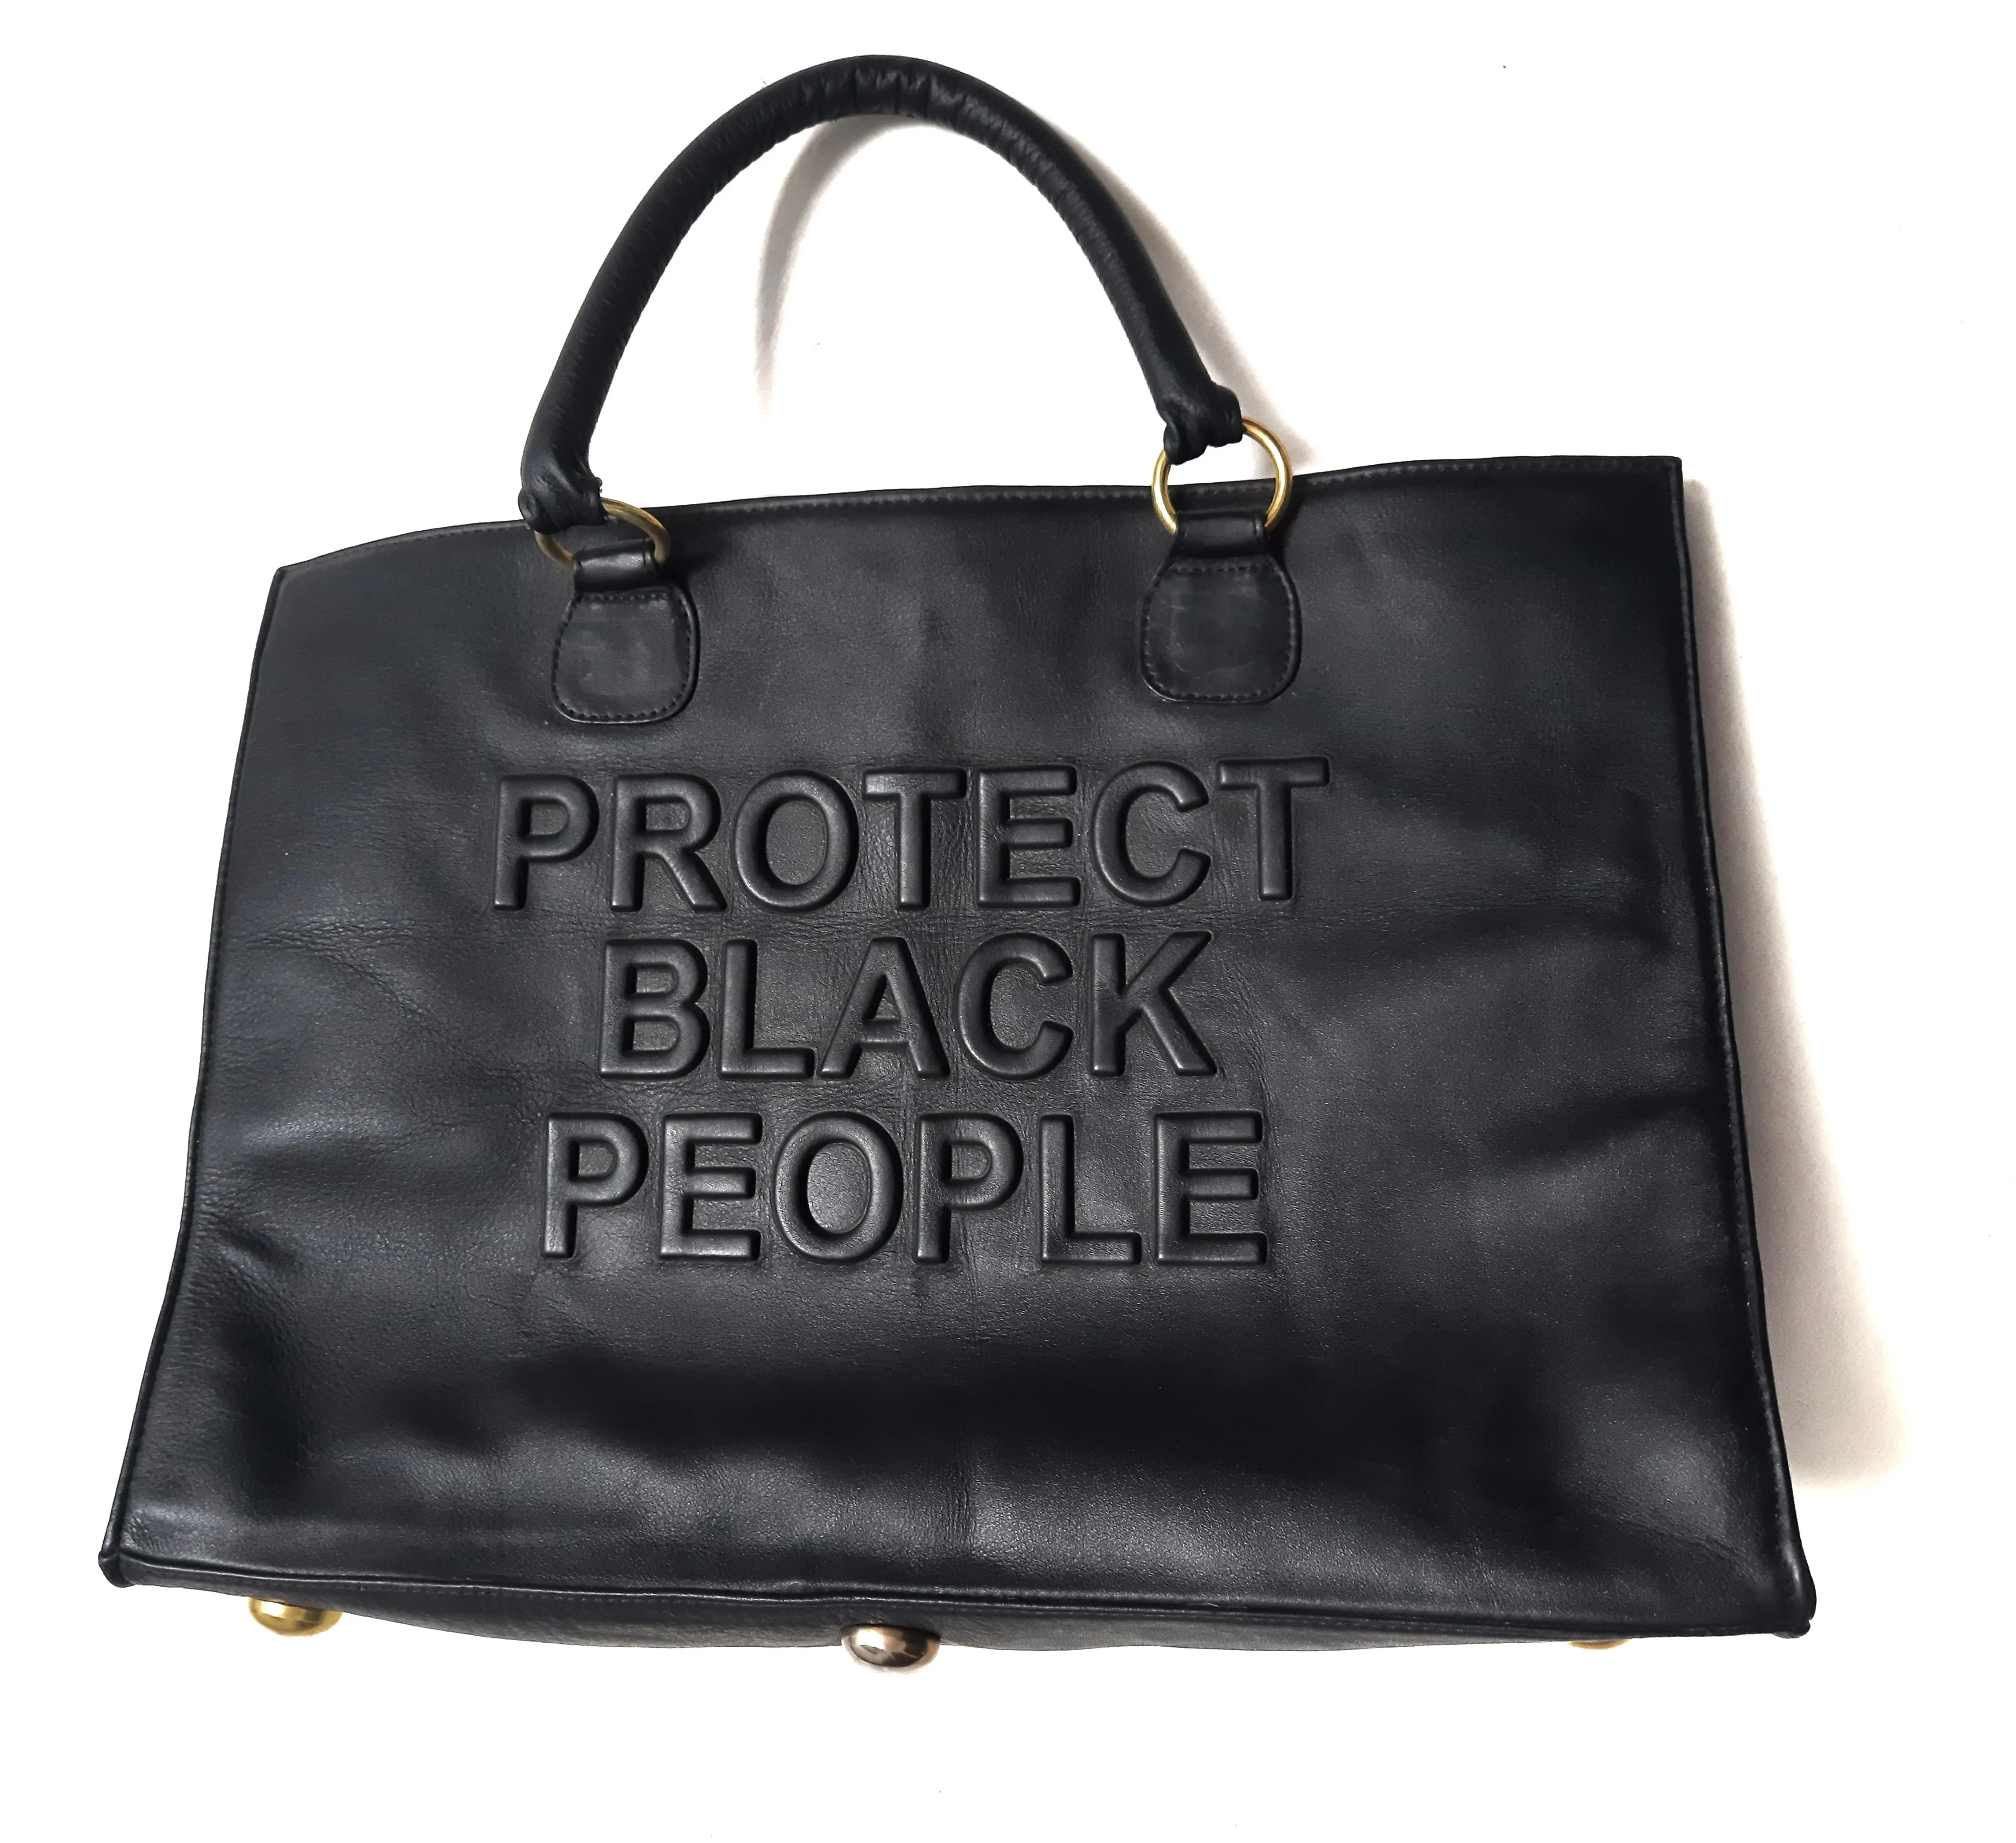 Bayanlar Modern yeni stil siyah deri büyük çanta moda kadın tam boy yumuşak deri omuzdan askili çanta